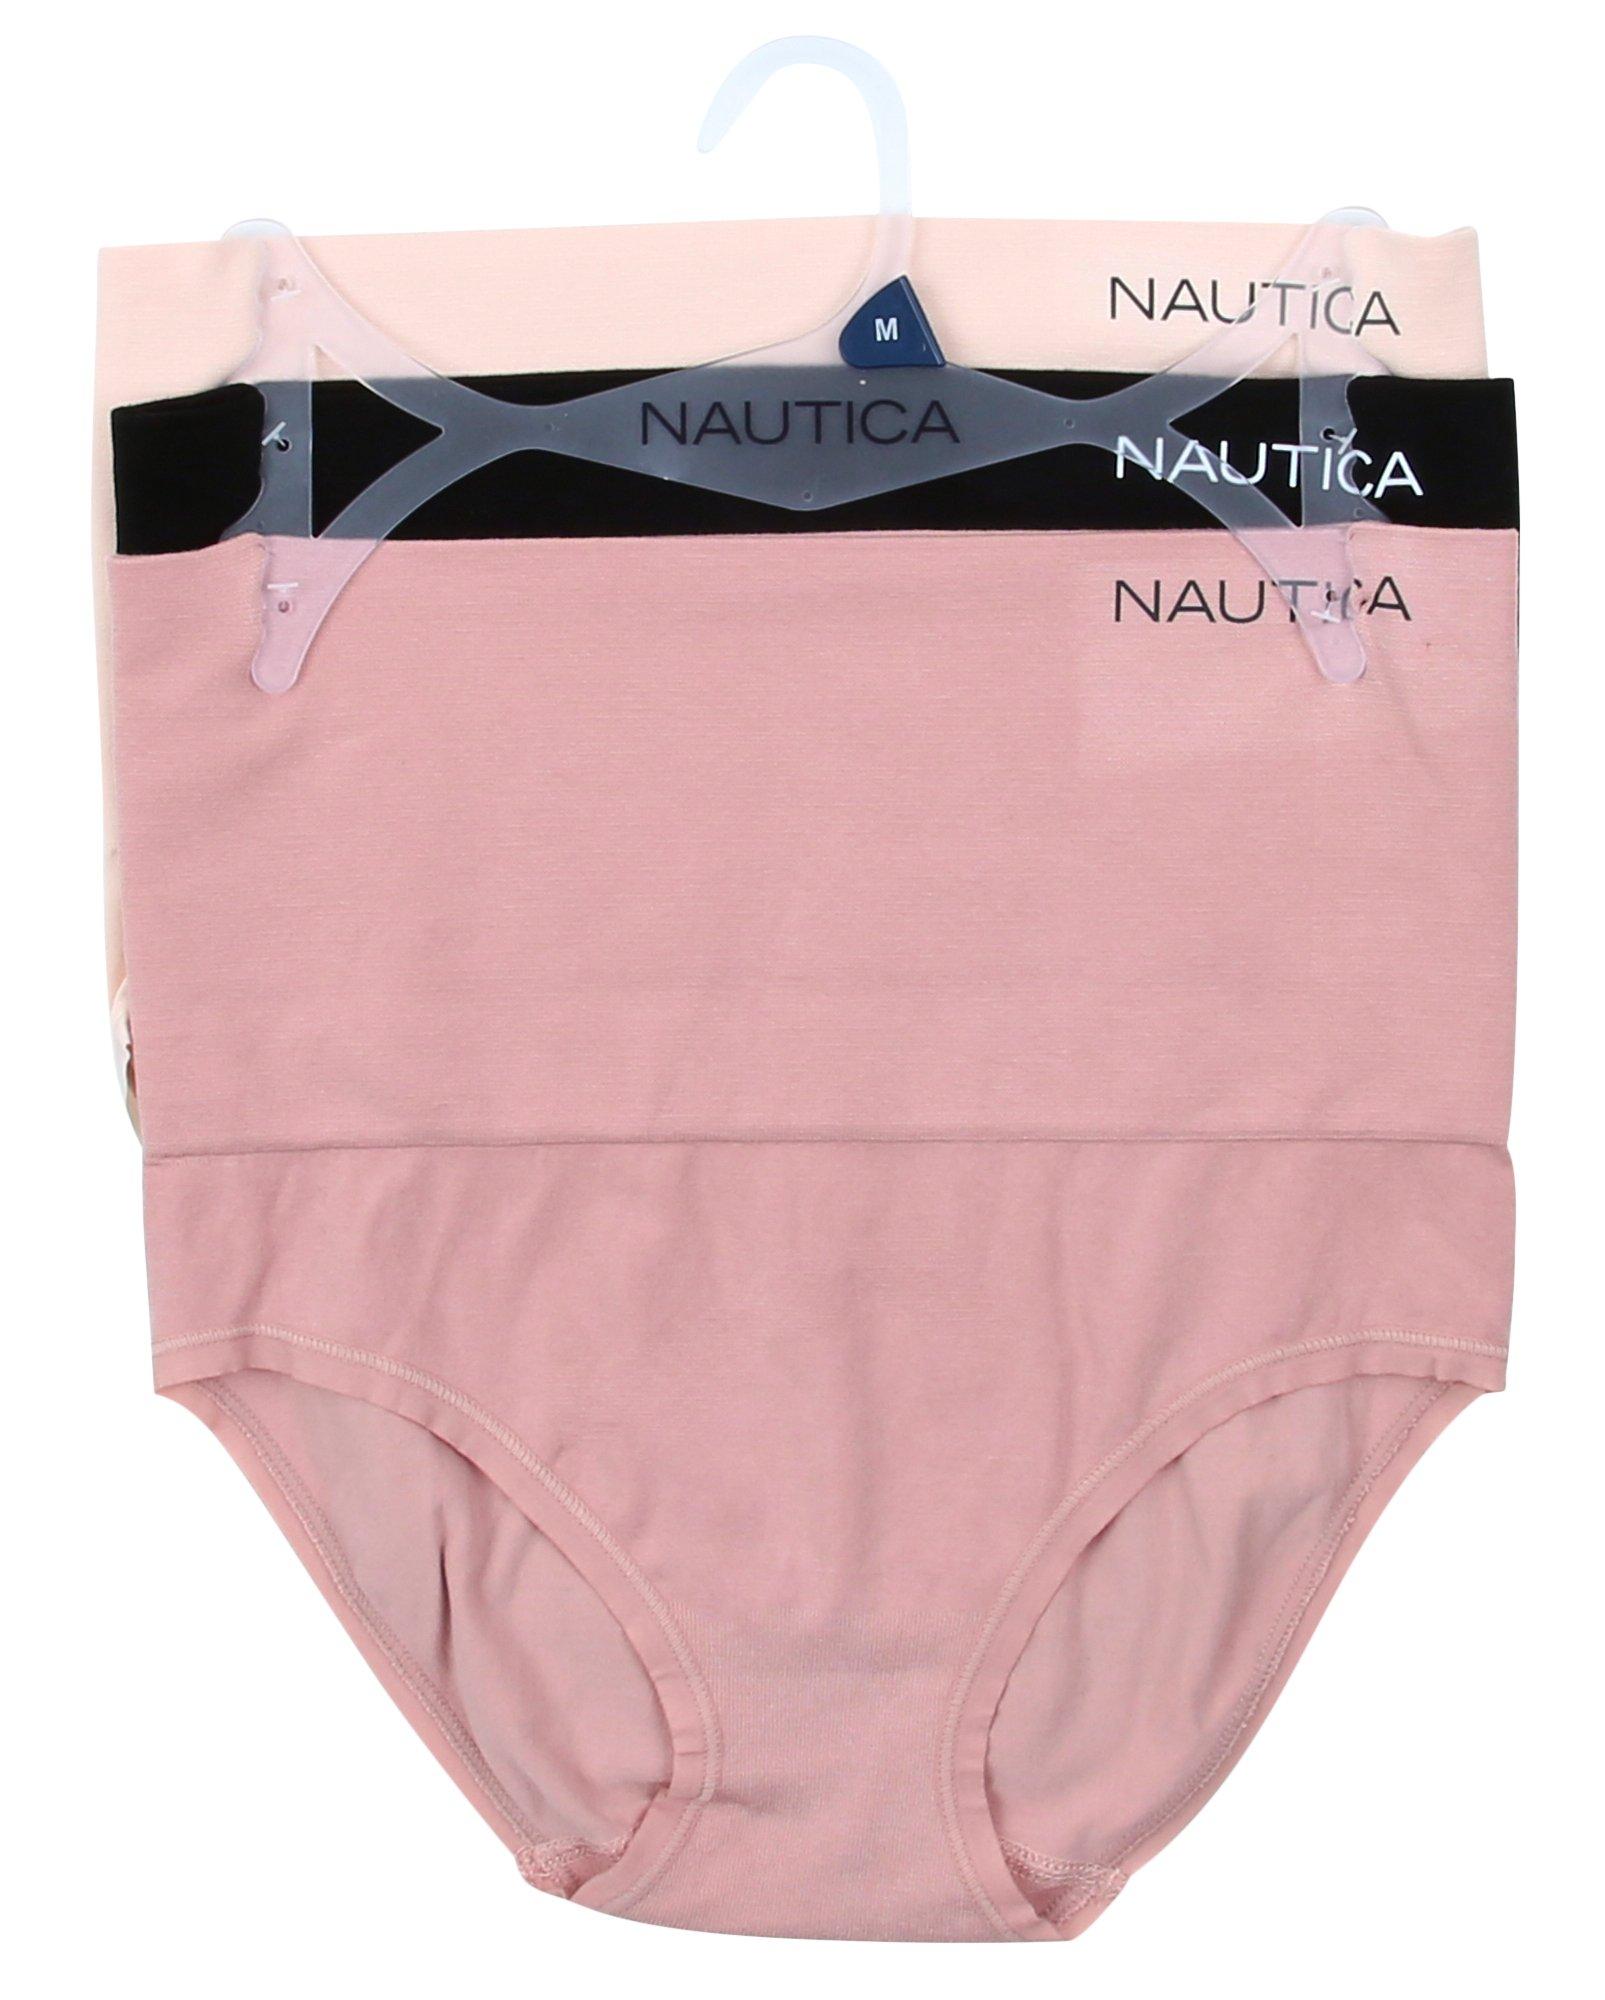 Nautica Intimates Super Soft High Waist Briefs Panties 1X 2X 3X